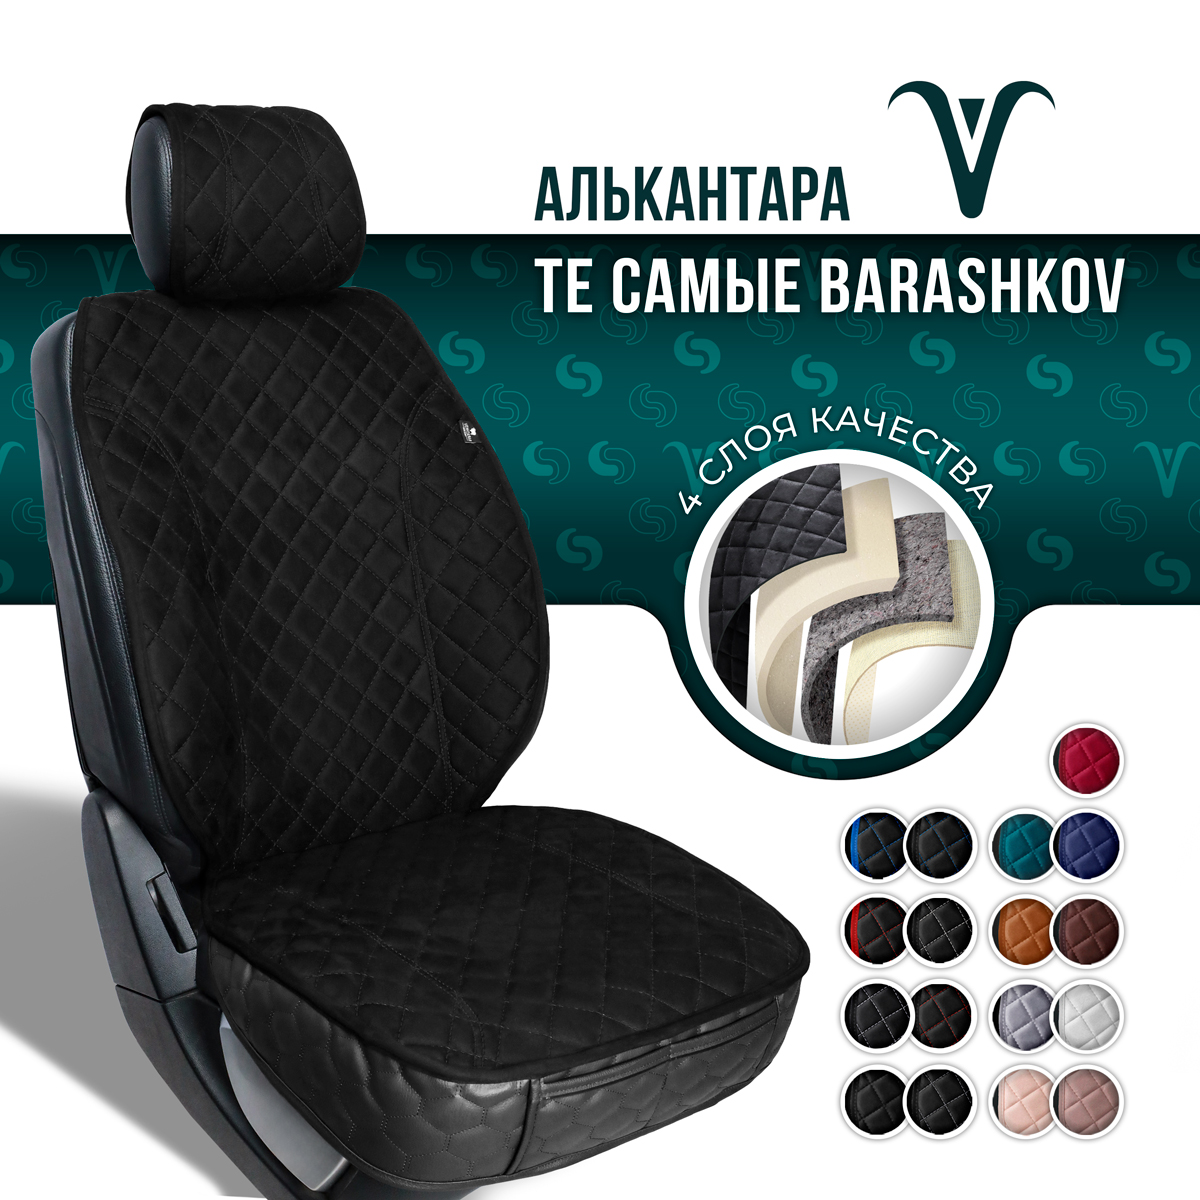 Накидка на сиденье автомобиля Barashkov с юбкой и боками из алькантары